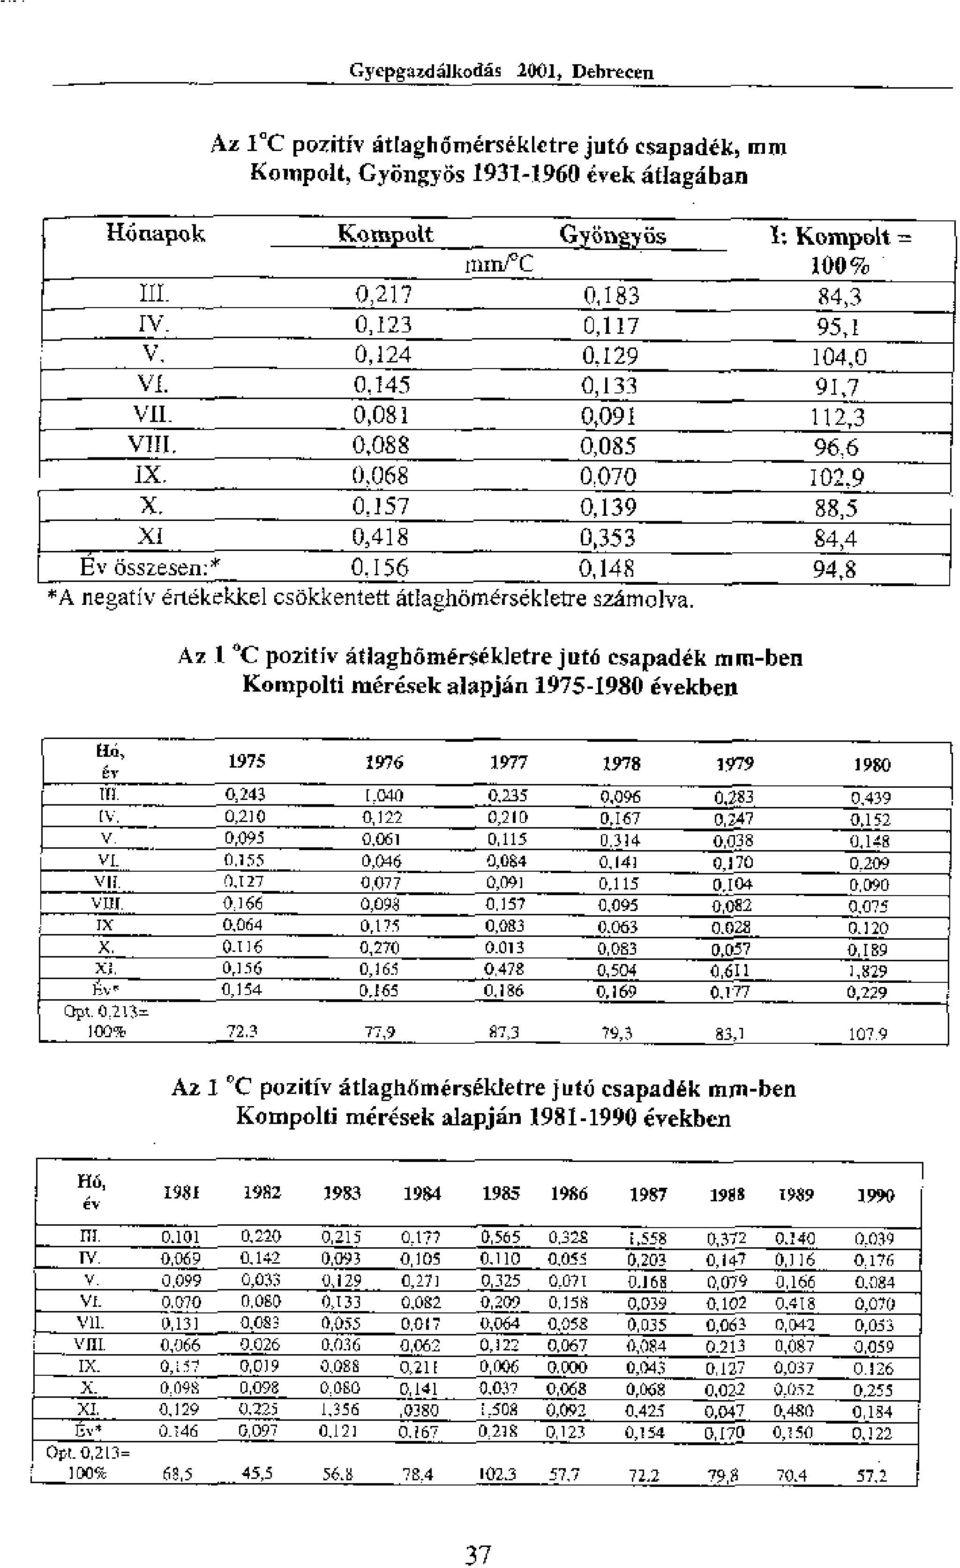 156 0,353 0,148 84,4 94,8 *A negativ ertekkkel csokkentett atiaghomersdkletre szarnolva. Az C pozitiv atlaghomerokletrejuta esapadik mm-ben Kompolti meresek alapian 1975-1980 evekben.